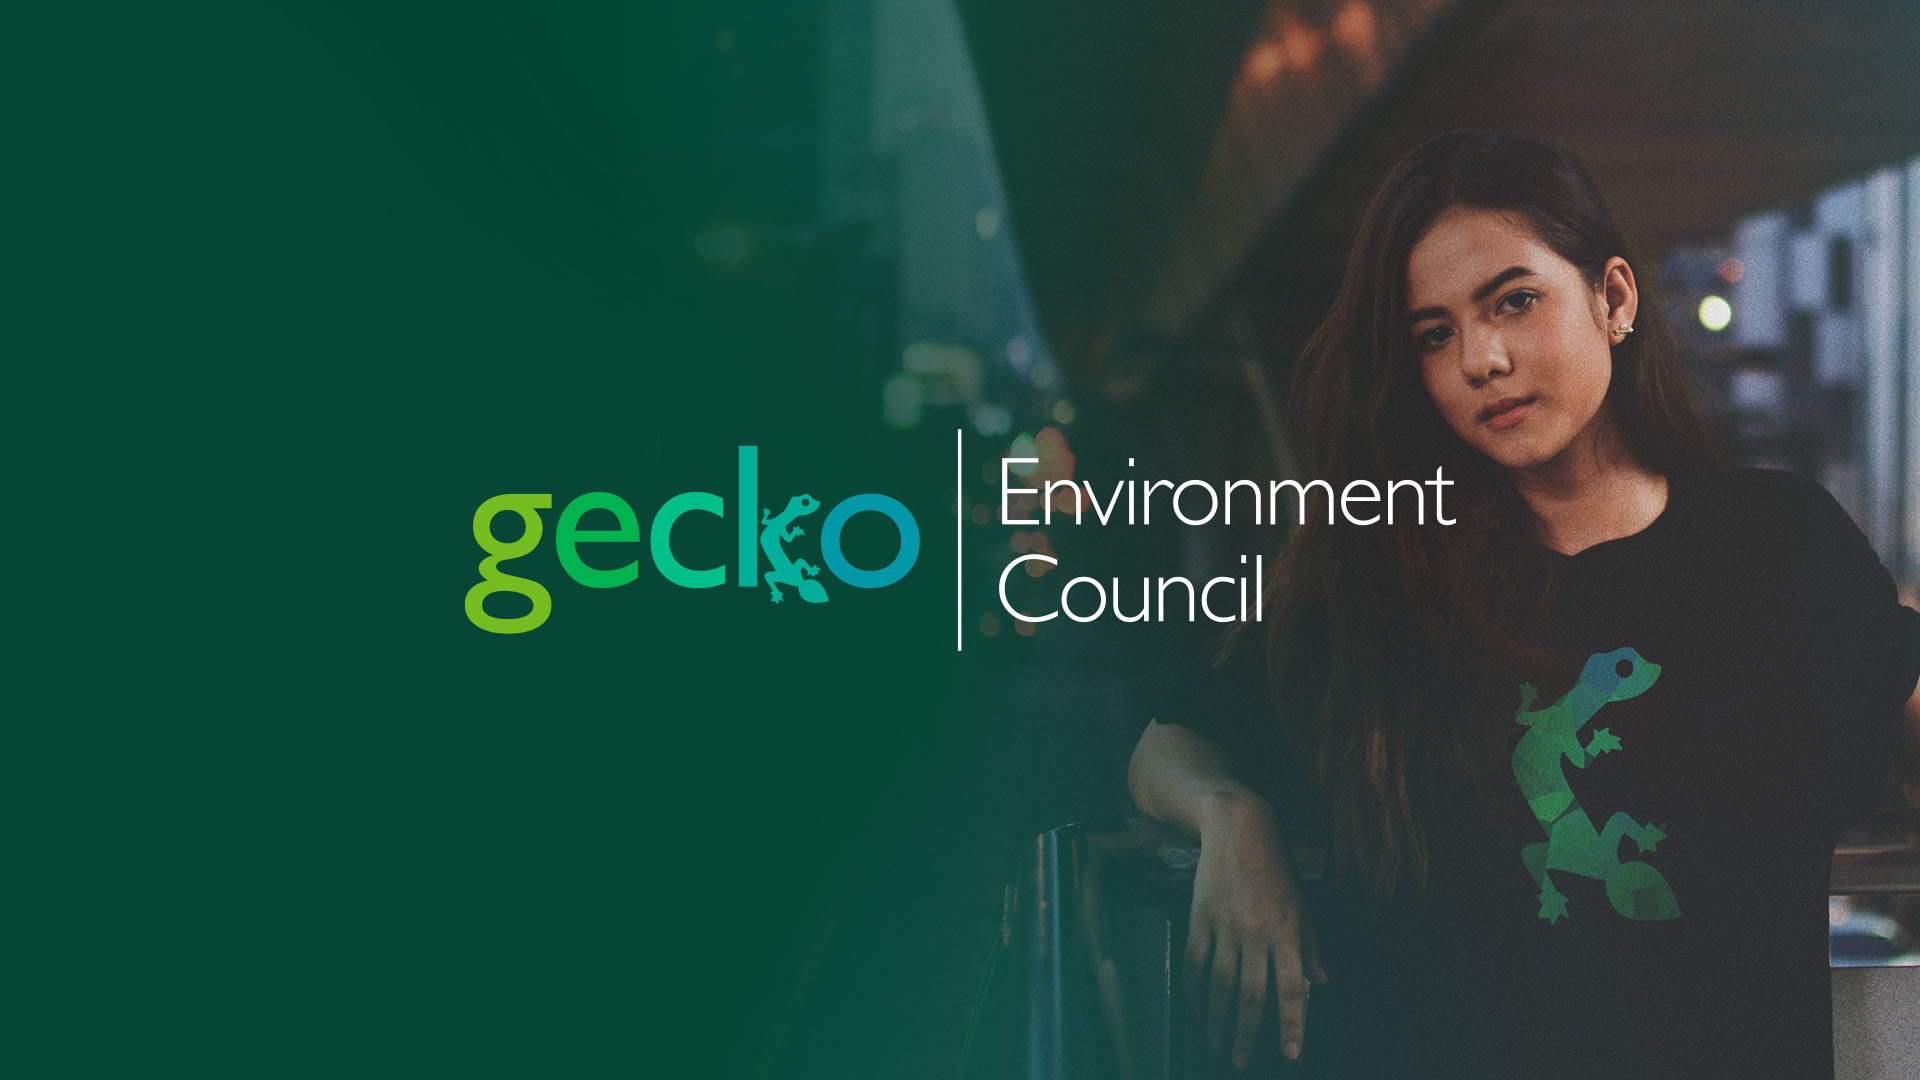 Gecko Environment Council